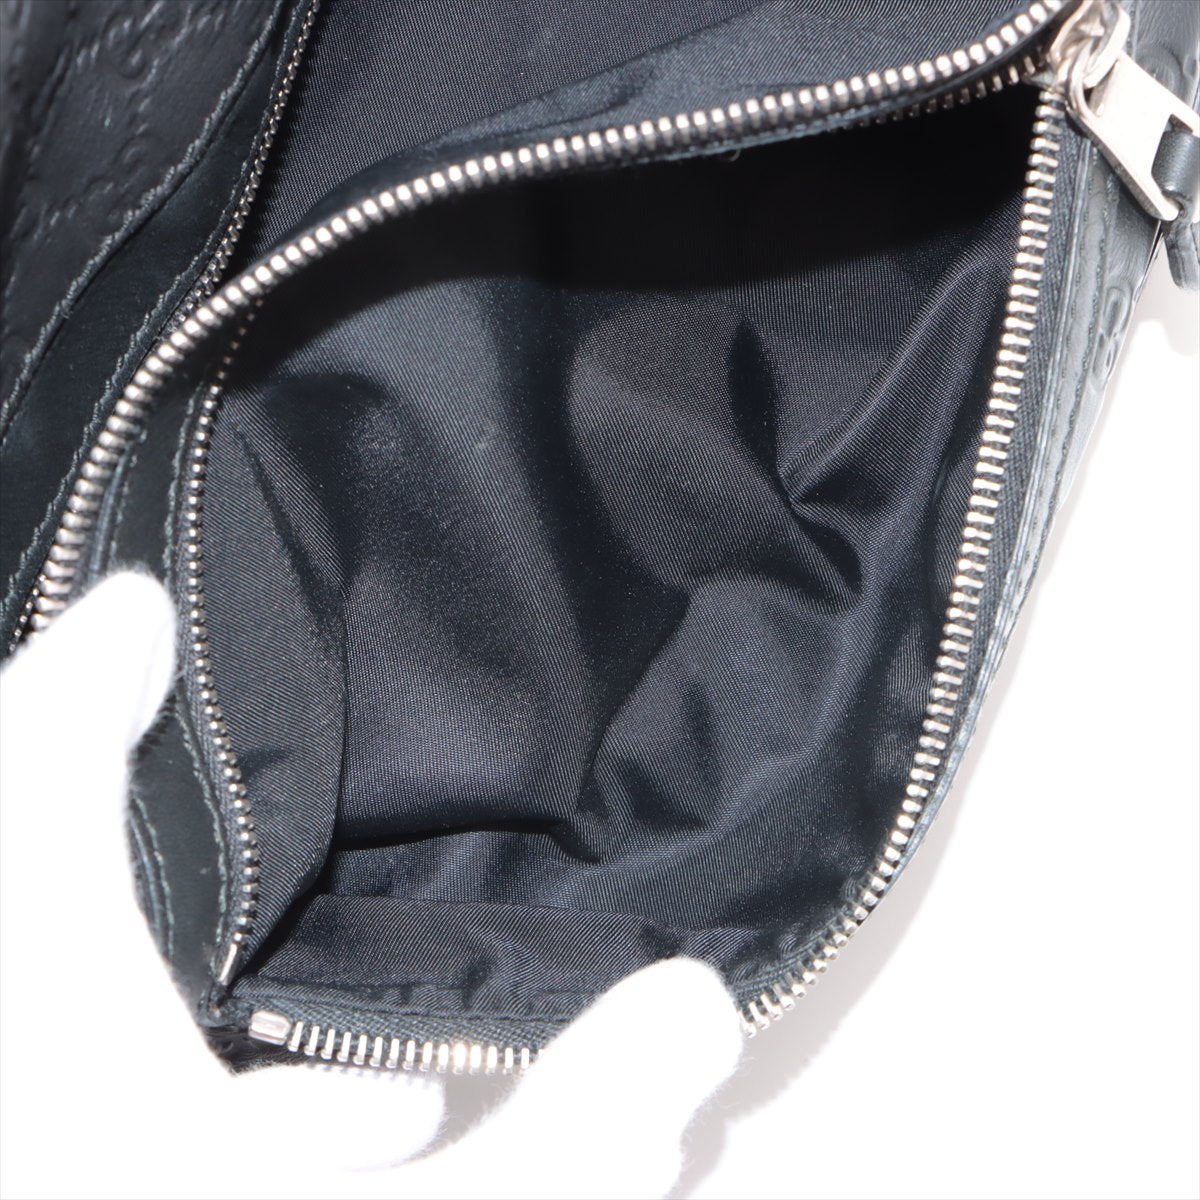 Gucci Gucci Leather Body Bag Black 246409